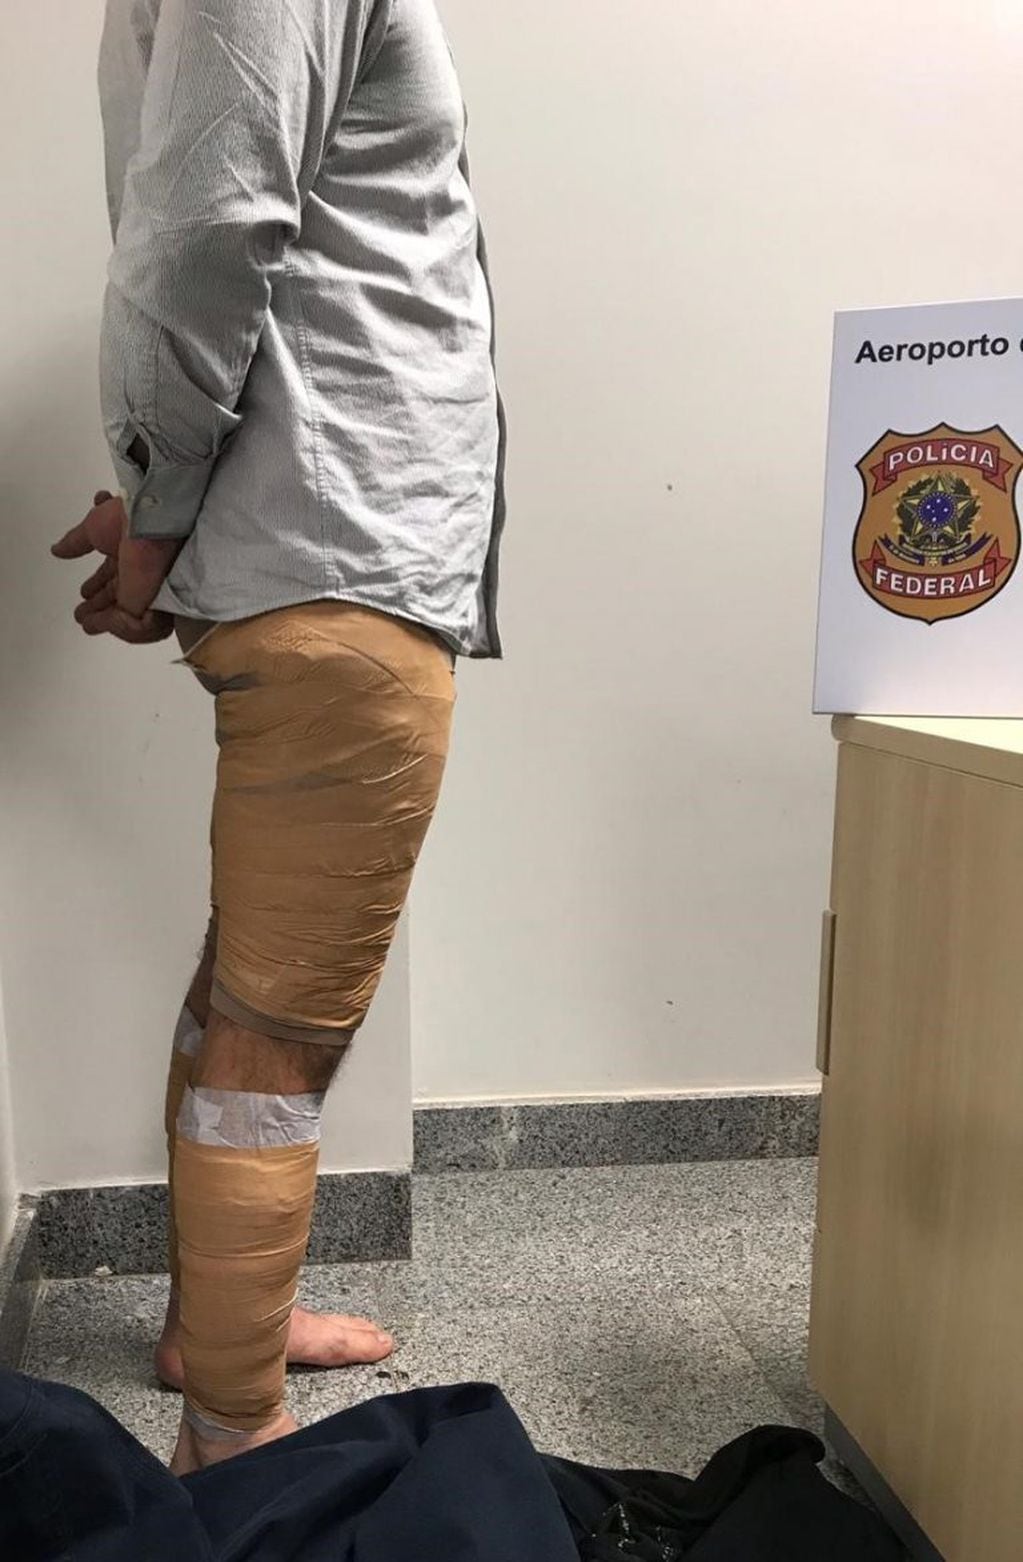 Los vendajes cubrían casi la totalidad de sus piernas. Debajo llevaba cocaína. (Policía Federal de Brasil)